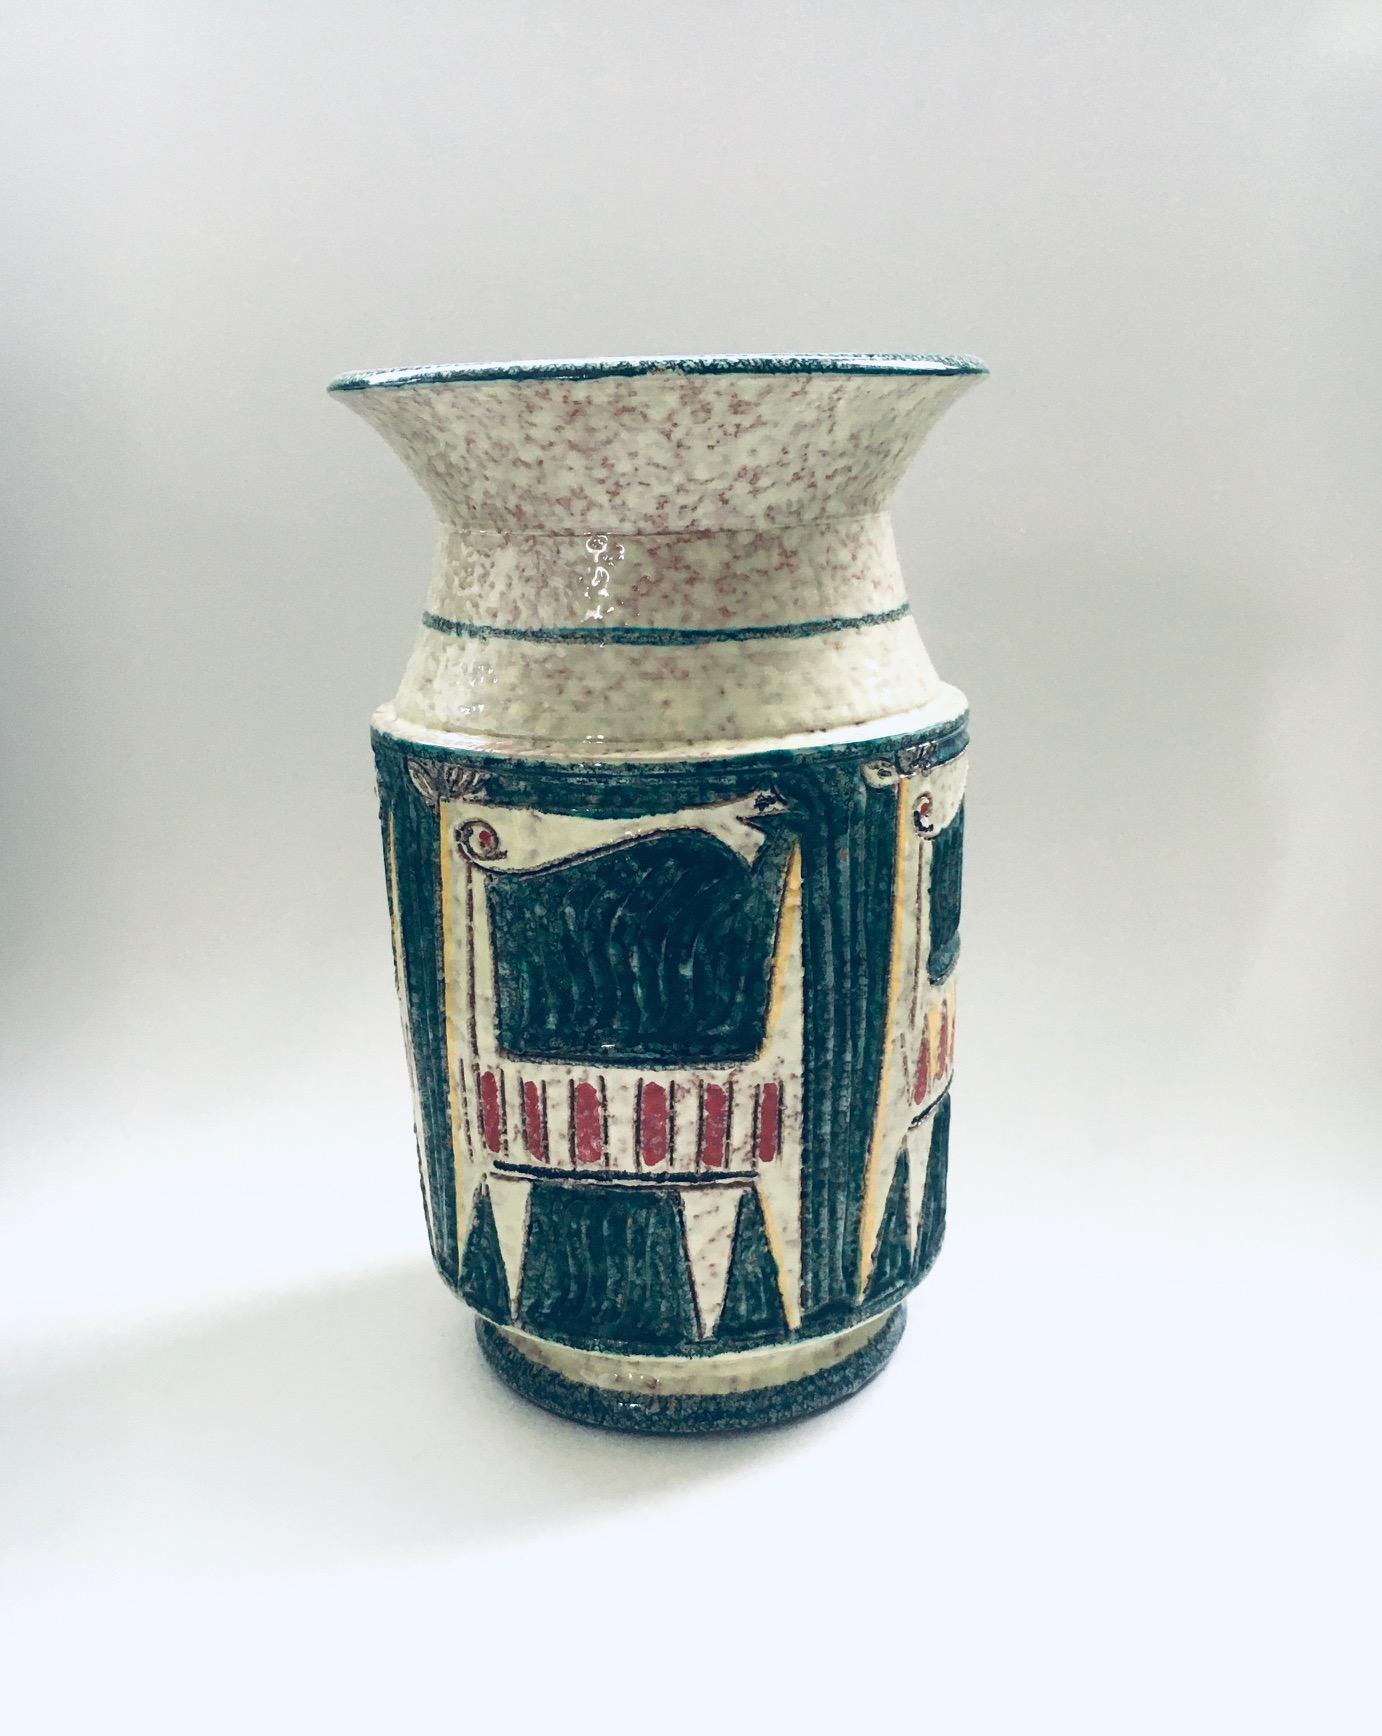 Vintage Midcentury Art Ceramics Studio Steingut Etruscan Horses Vase Modell 63/65 von Fratelli Fanciullacci, hergestellt in Italien 1960er Jahre. Signiert Italien 63/65 auf der Unterseite. Großes Modell Vase mit schönen abstrakten illustrierten